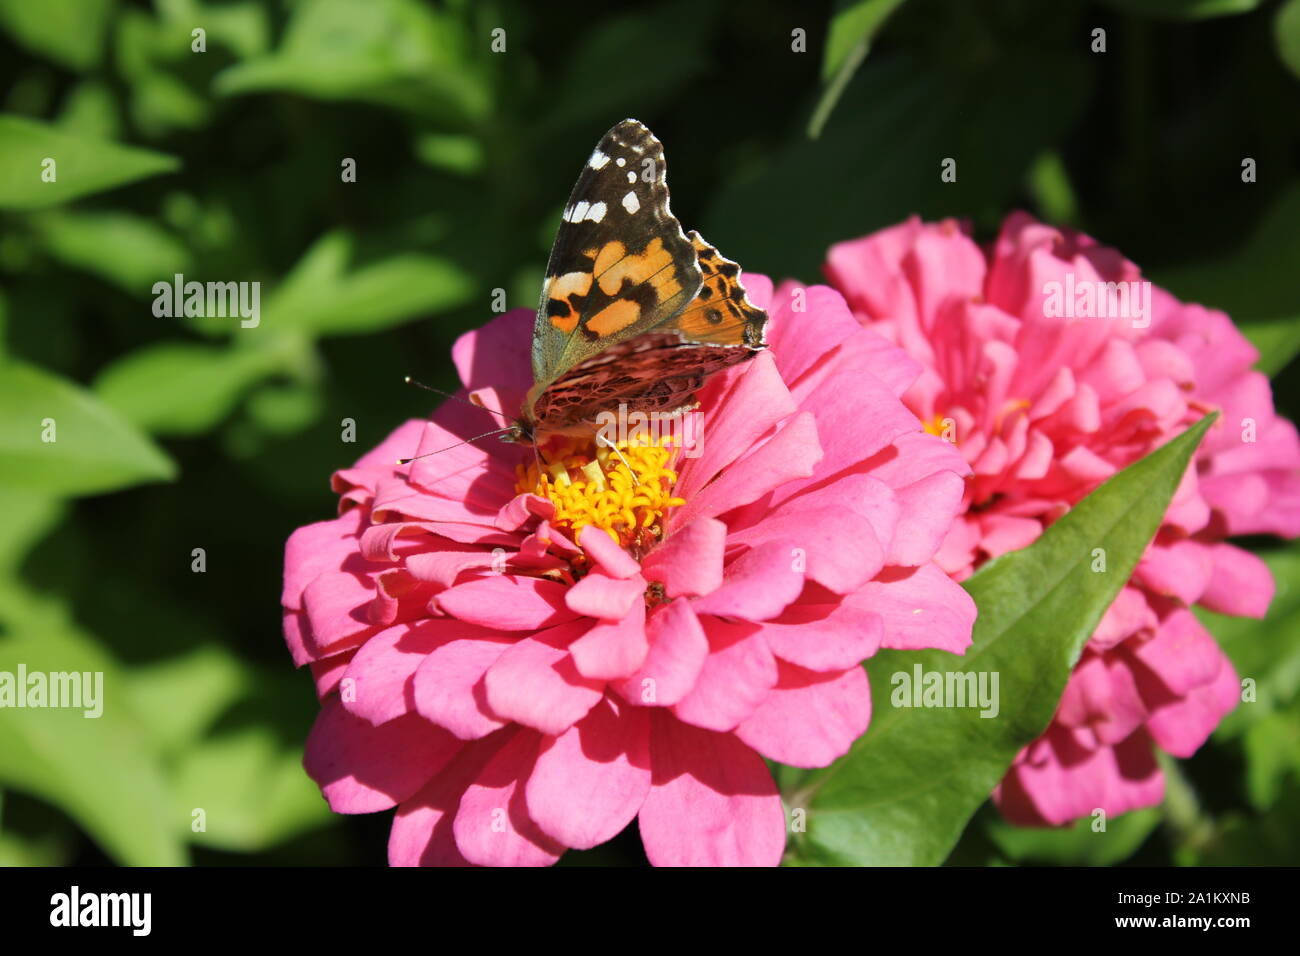 Beautiful orange and black monarch butterfly, Danaus plexippus, flying around a flower garden. Stock Photo